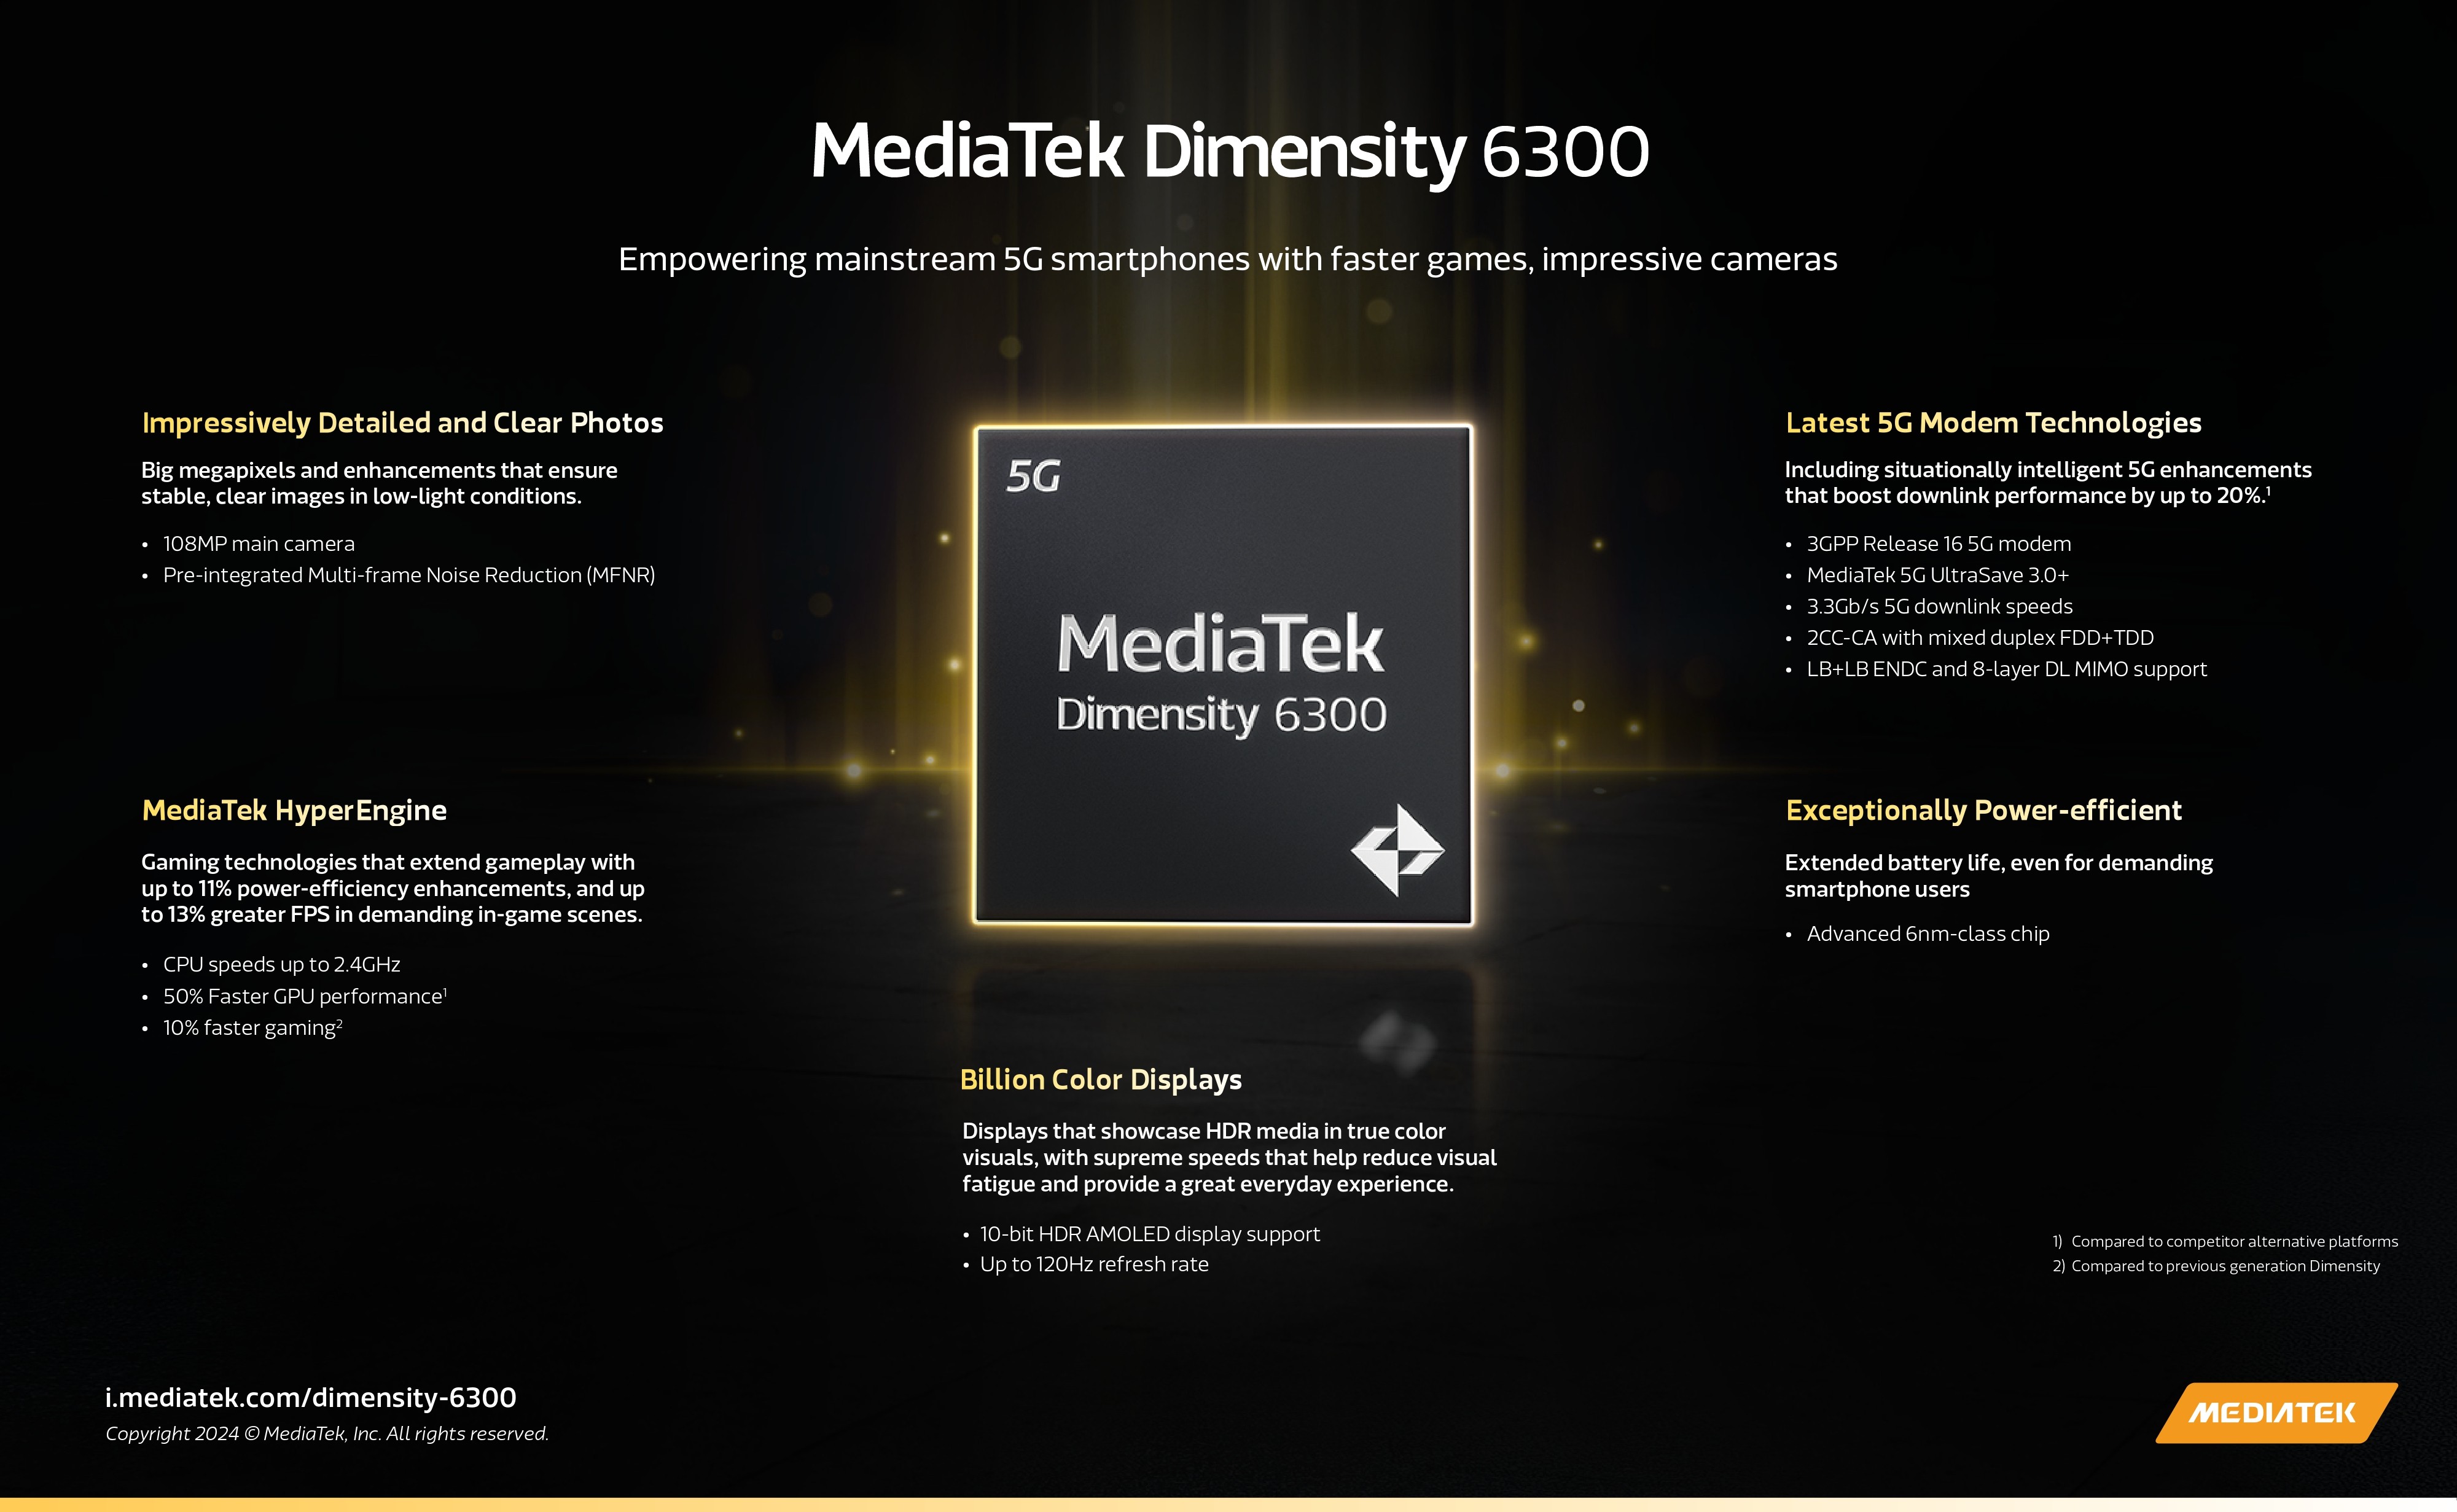 mediatek-dimensity-6300-infographic-1715241582.jpg